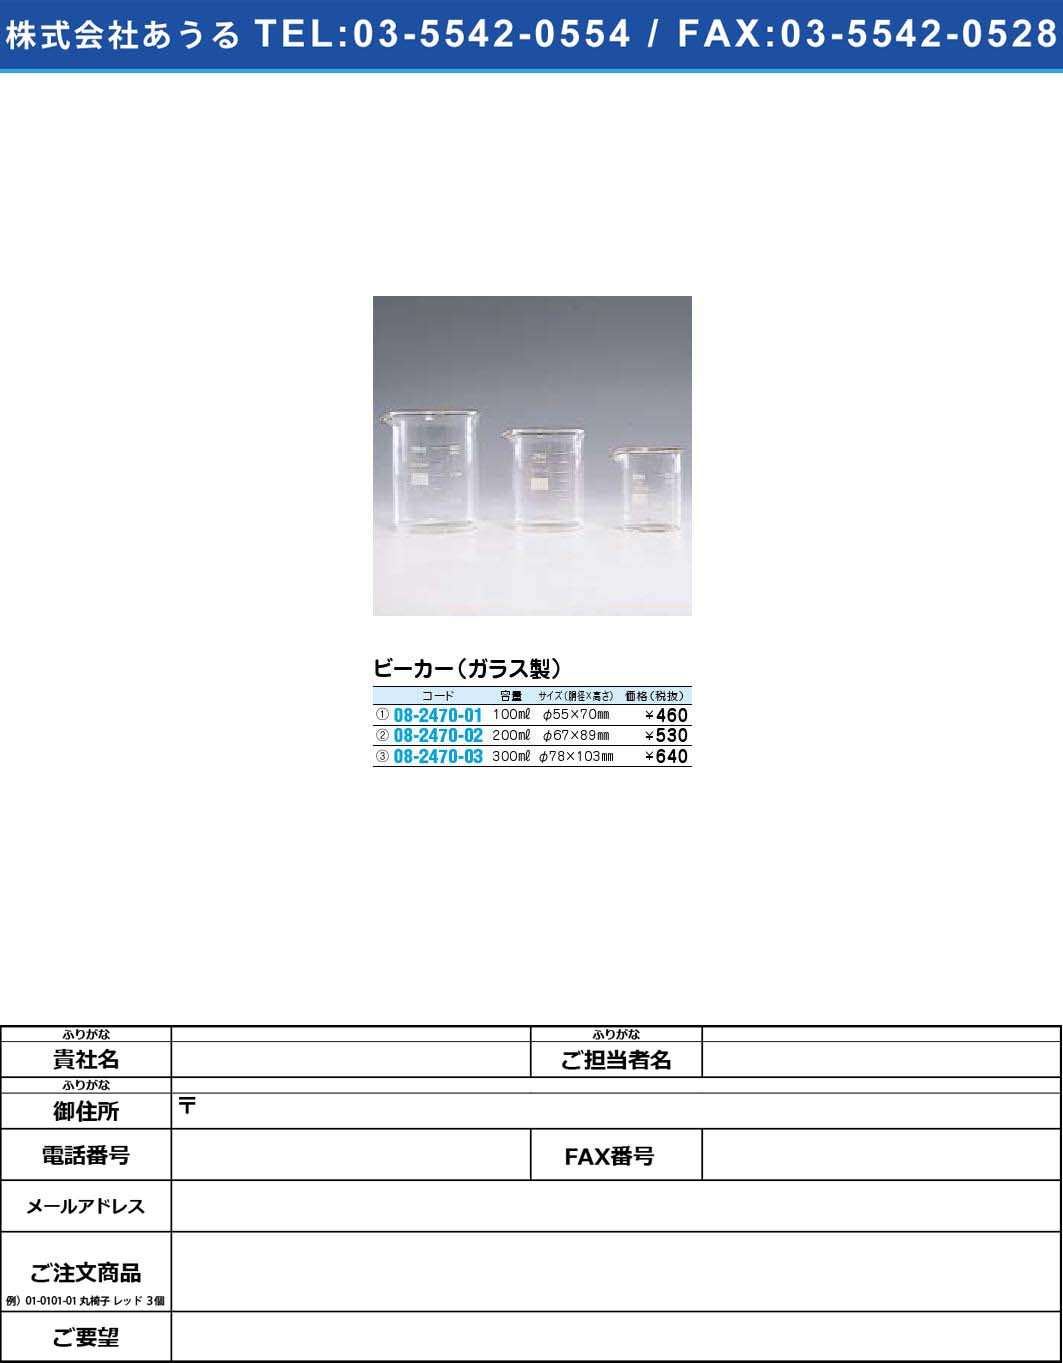 ビーカー（ガラス製） (08-2470-02)